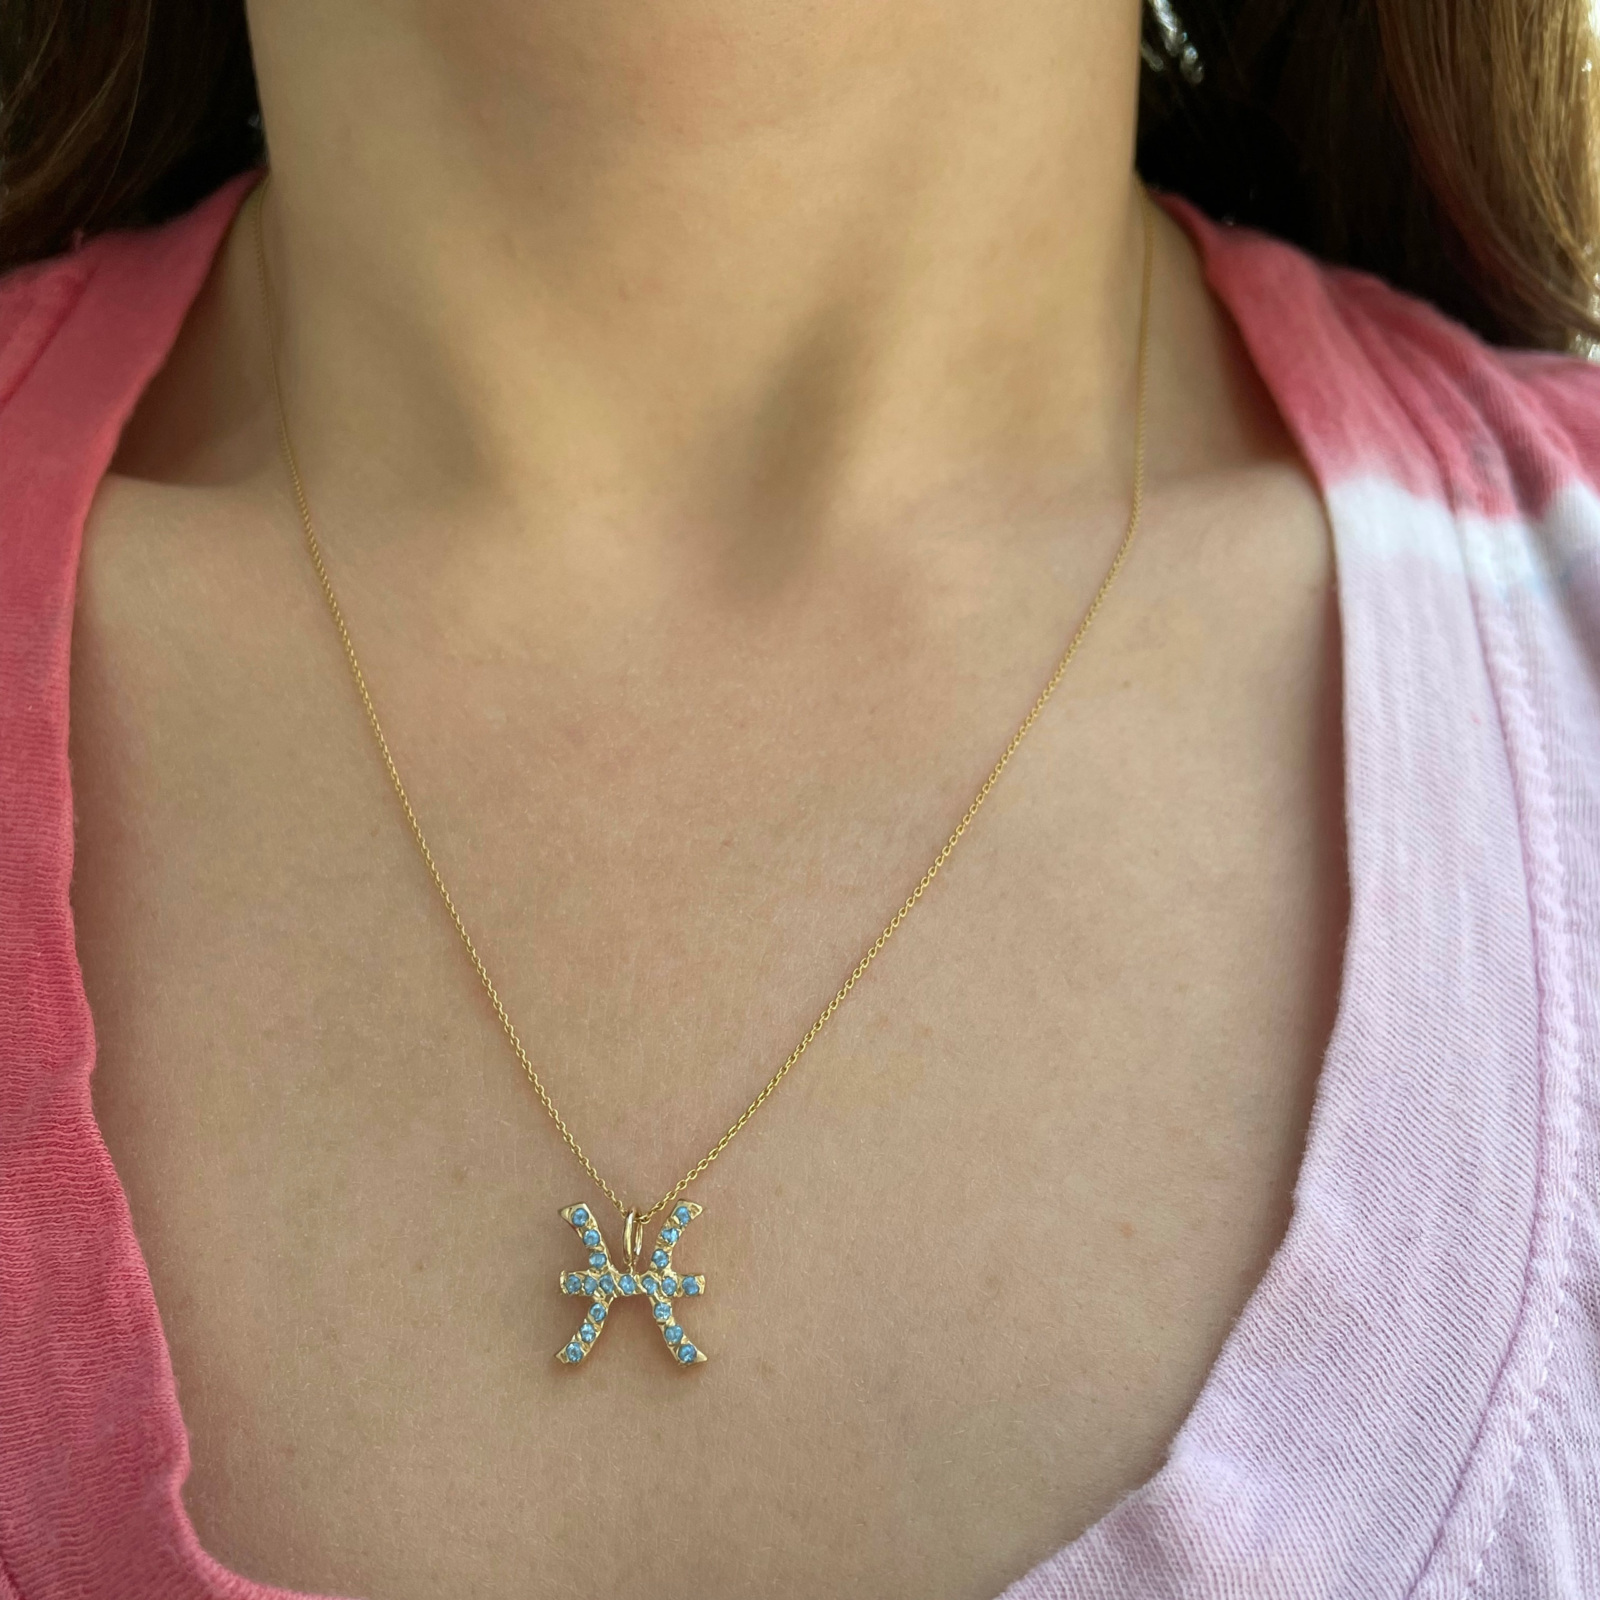 Pisces zodiac sign charm pendant necklace